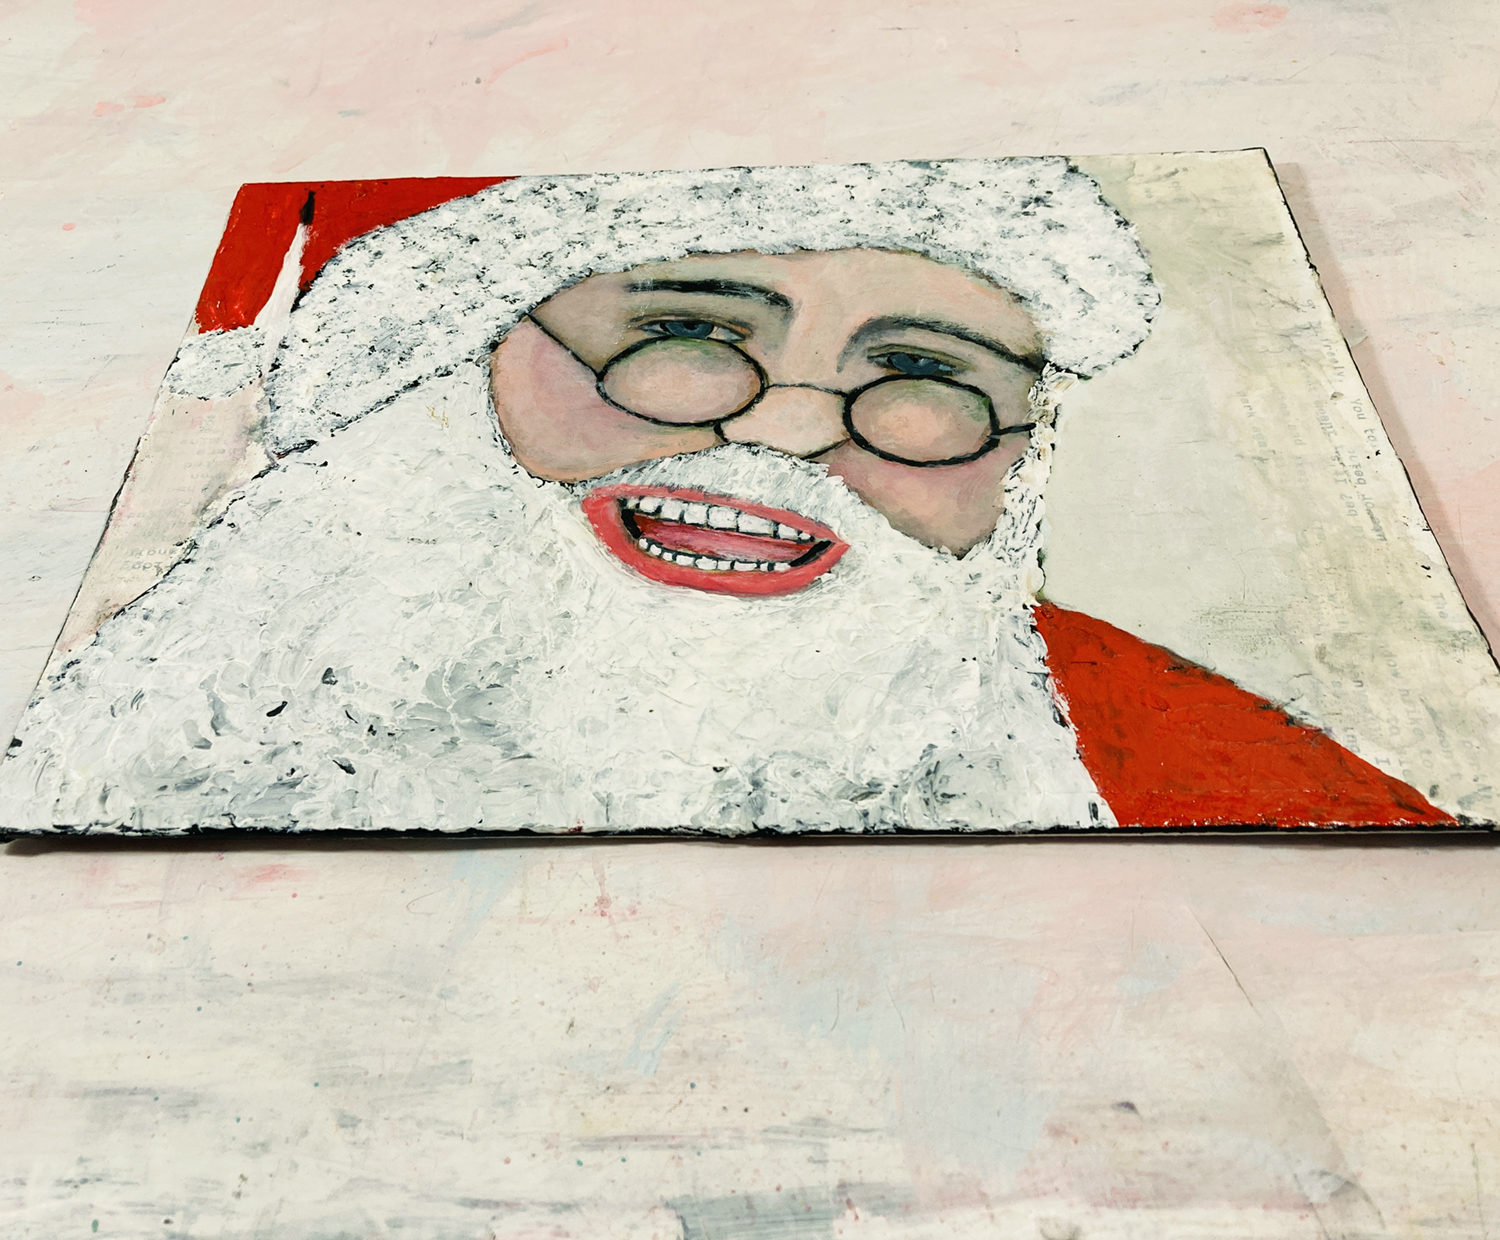 Katie Jeanne Wood - 9x12 Santa Claus portrait painting